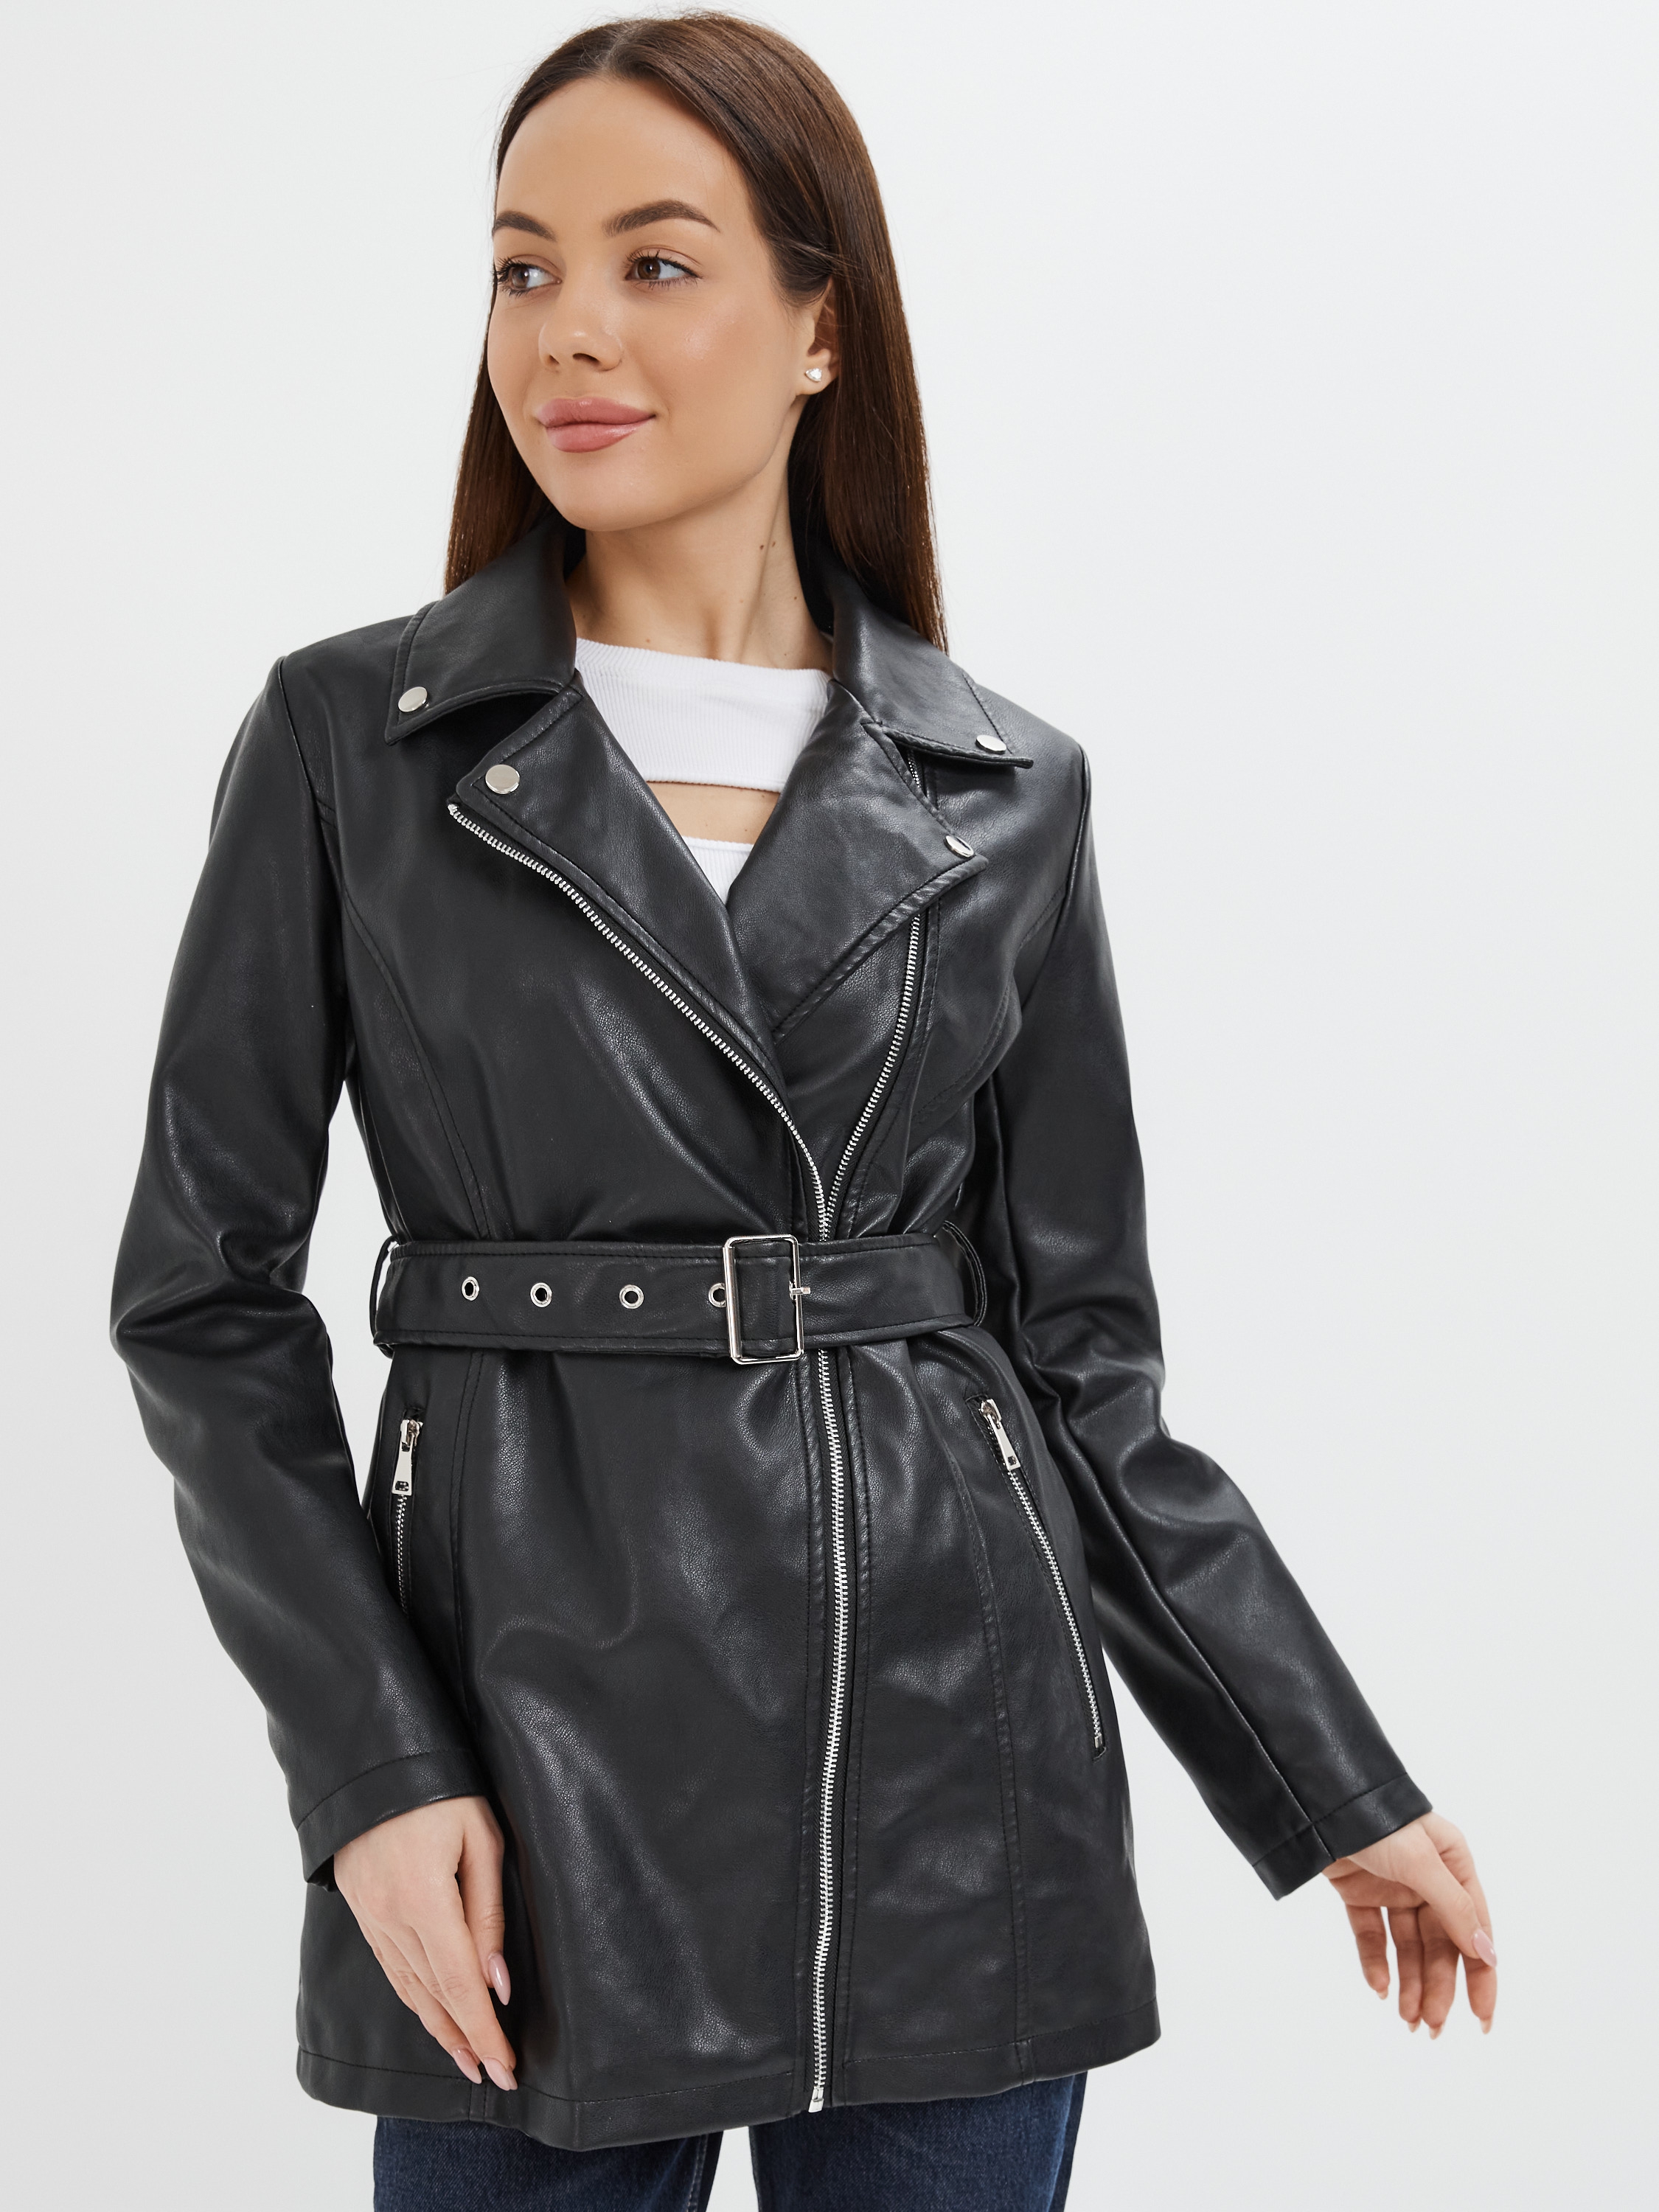 Кожаная куртка женская E-Lisman&ZG 061 черная 52 RU